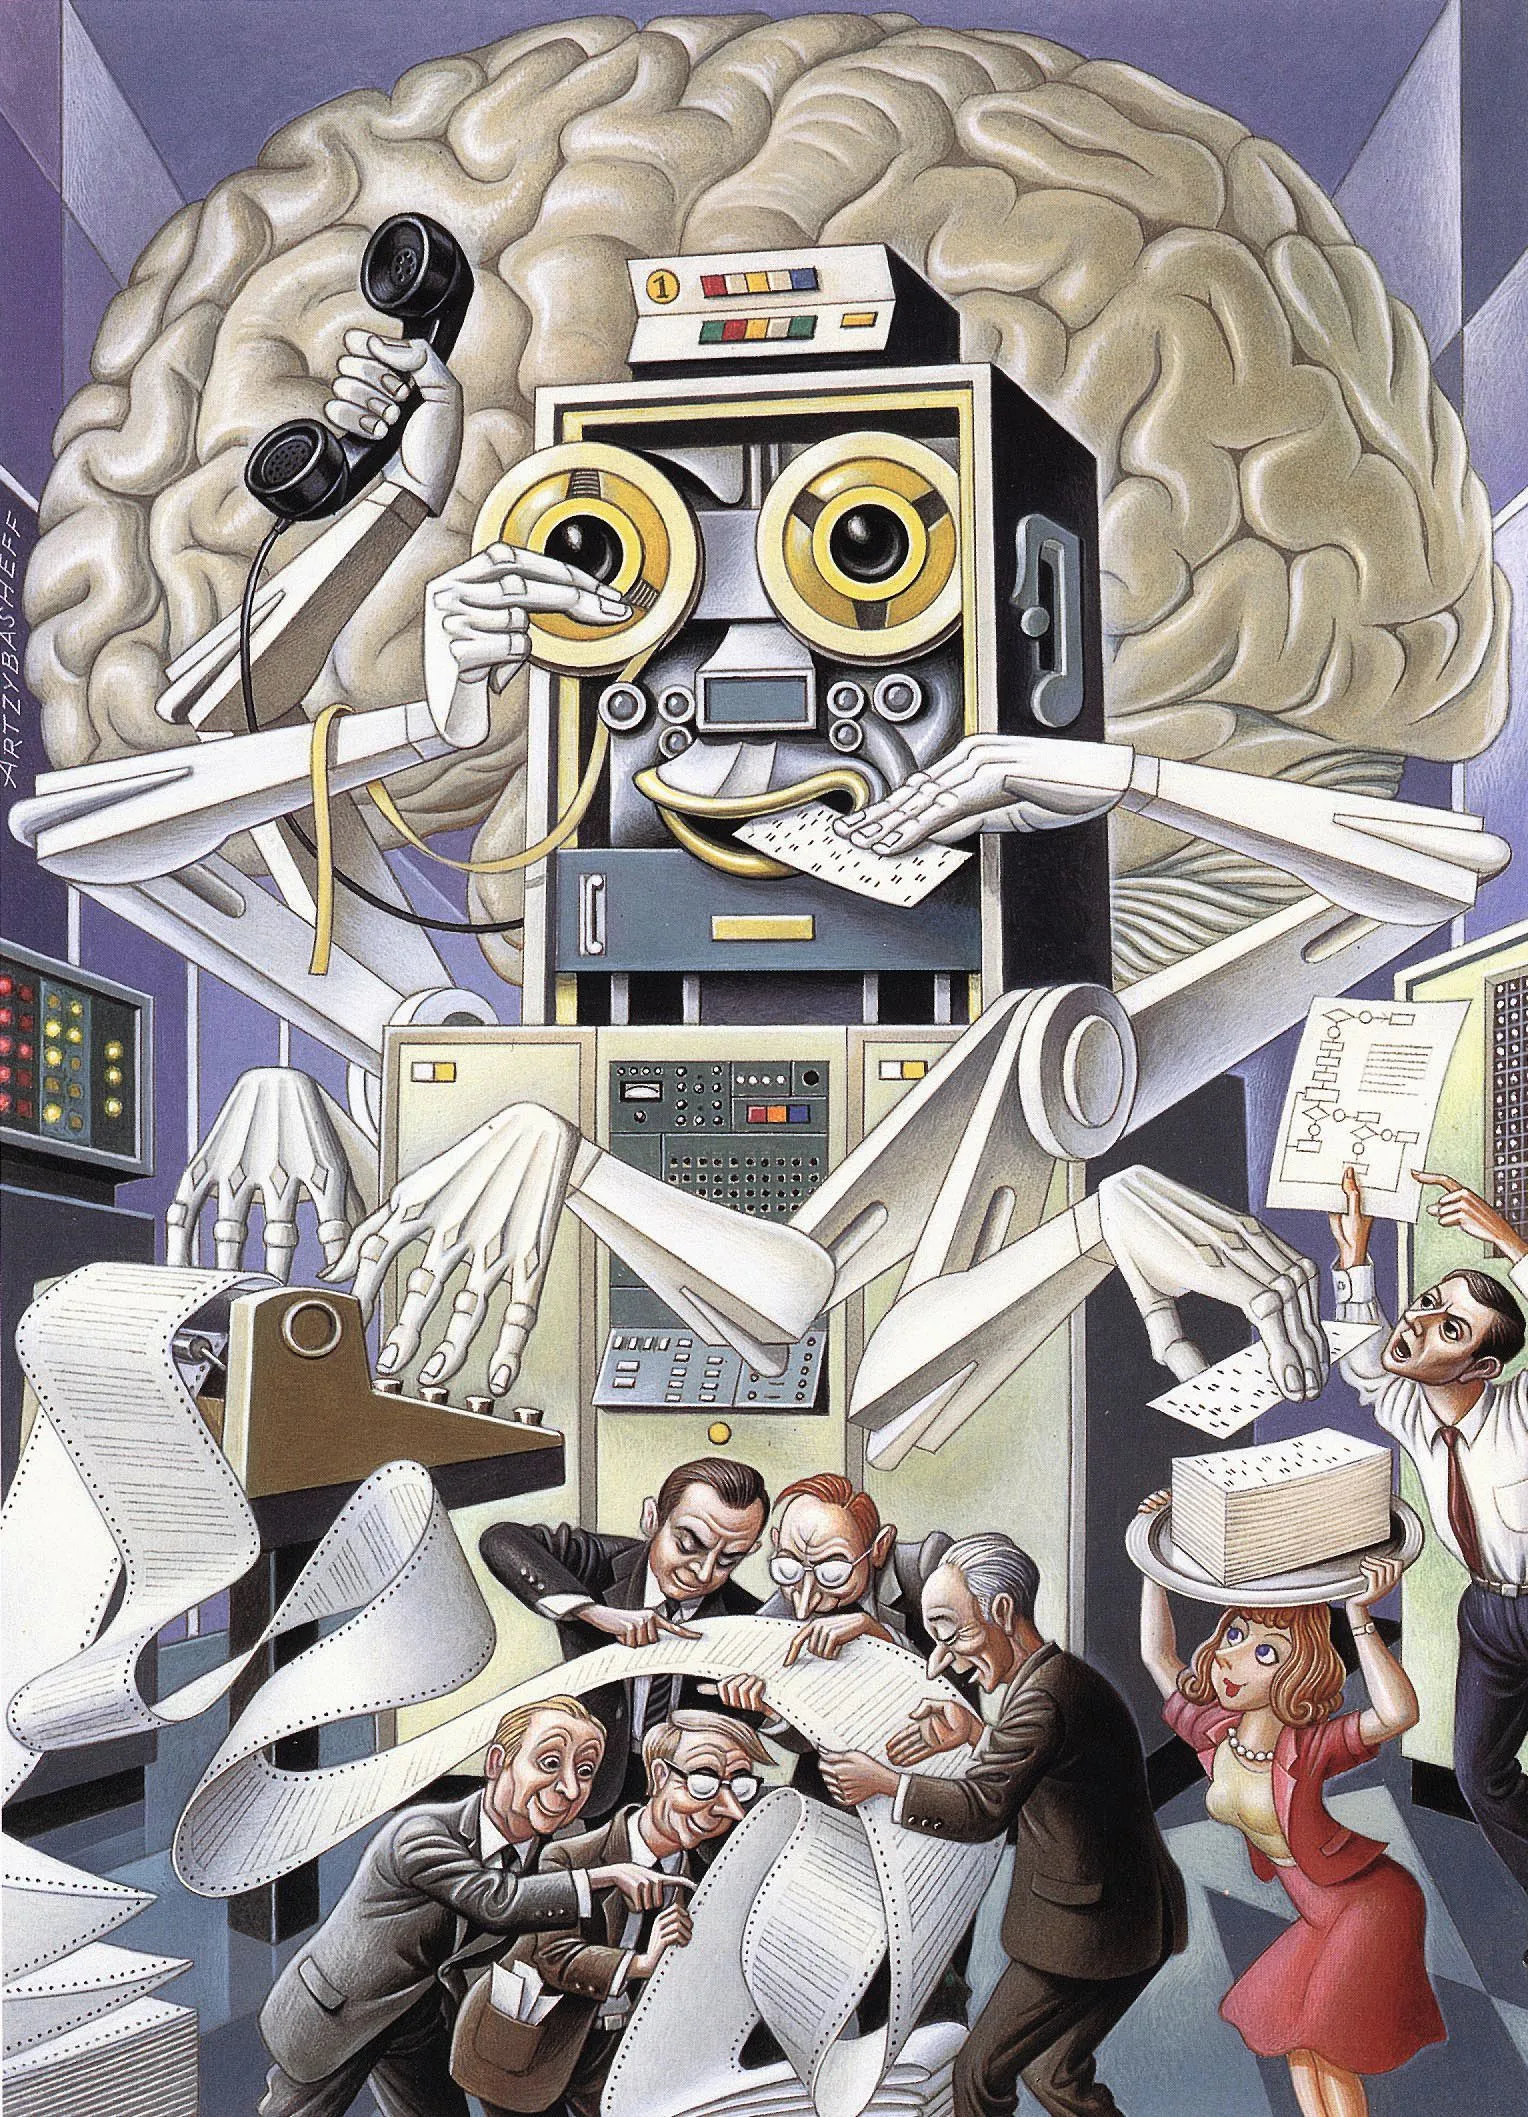 Visions de l'avenir, illustration, années 1950,
États-Unis.